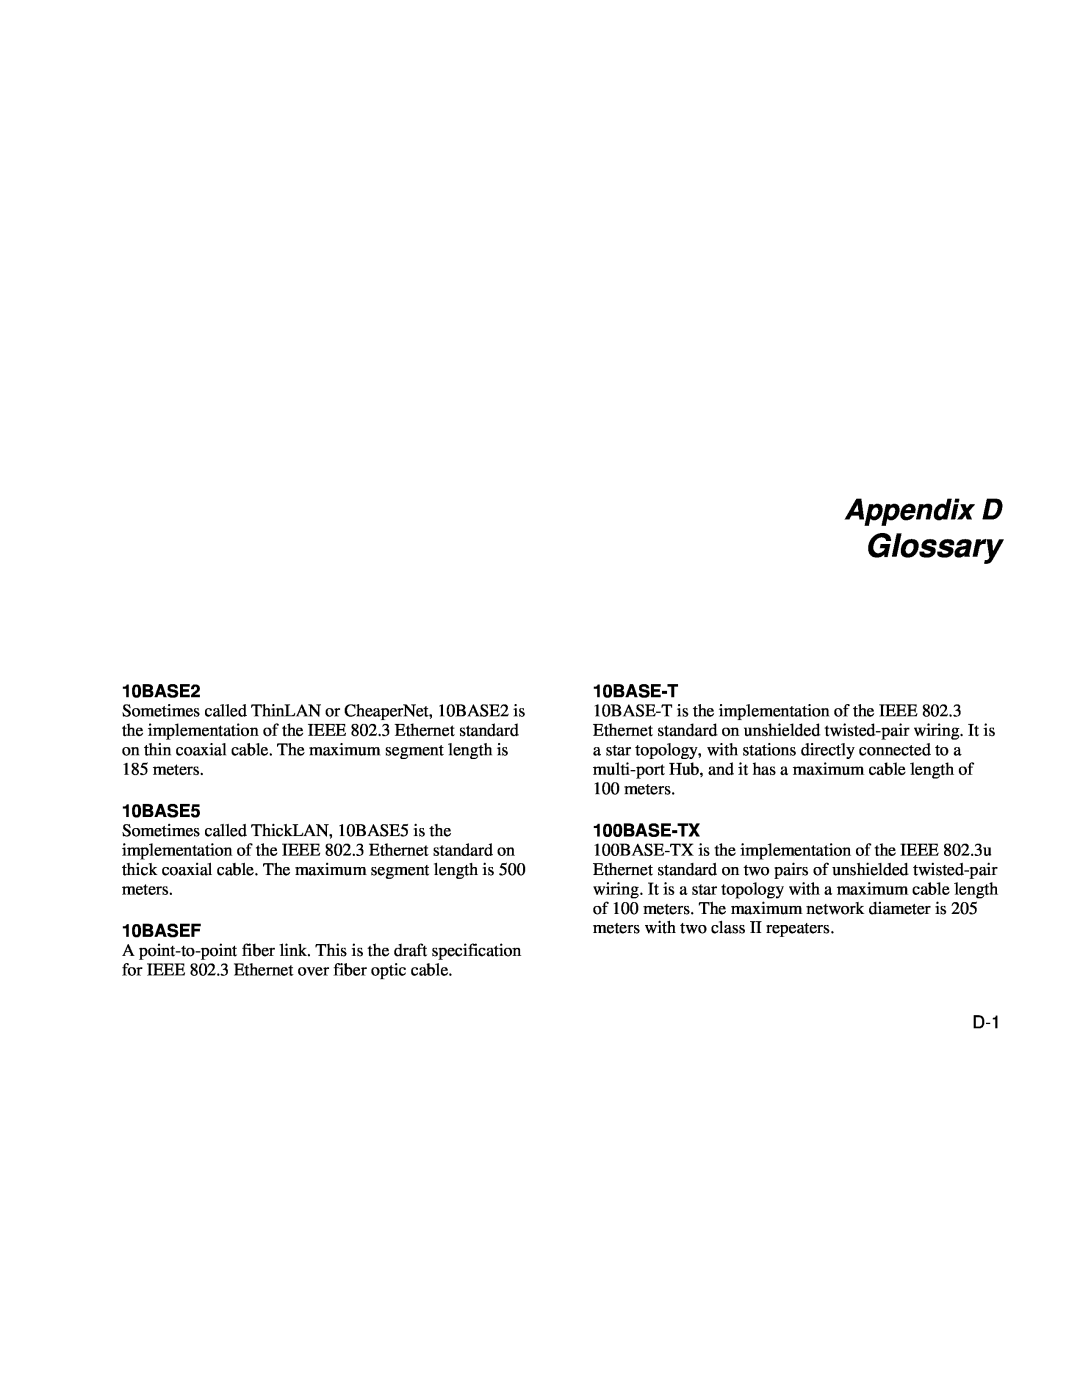 Fluke Series II user manual Glossary, Appendix D, 10BASE2, 10BASE5, 10BASEF, 10BASE-T, 100BASE-TX 